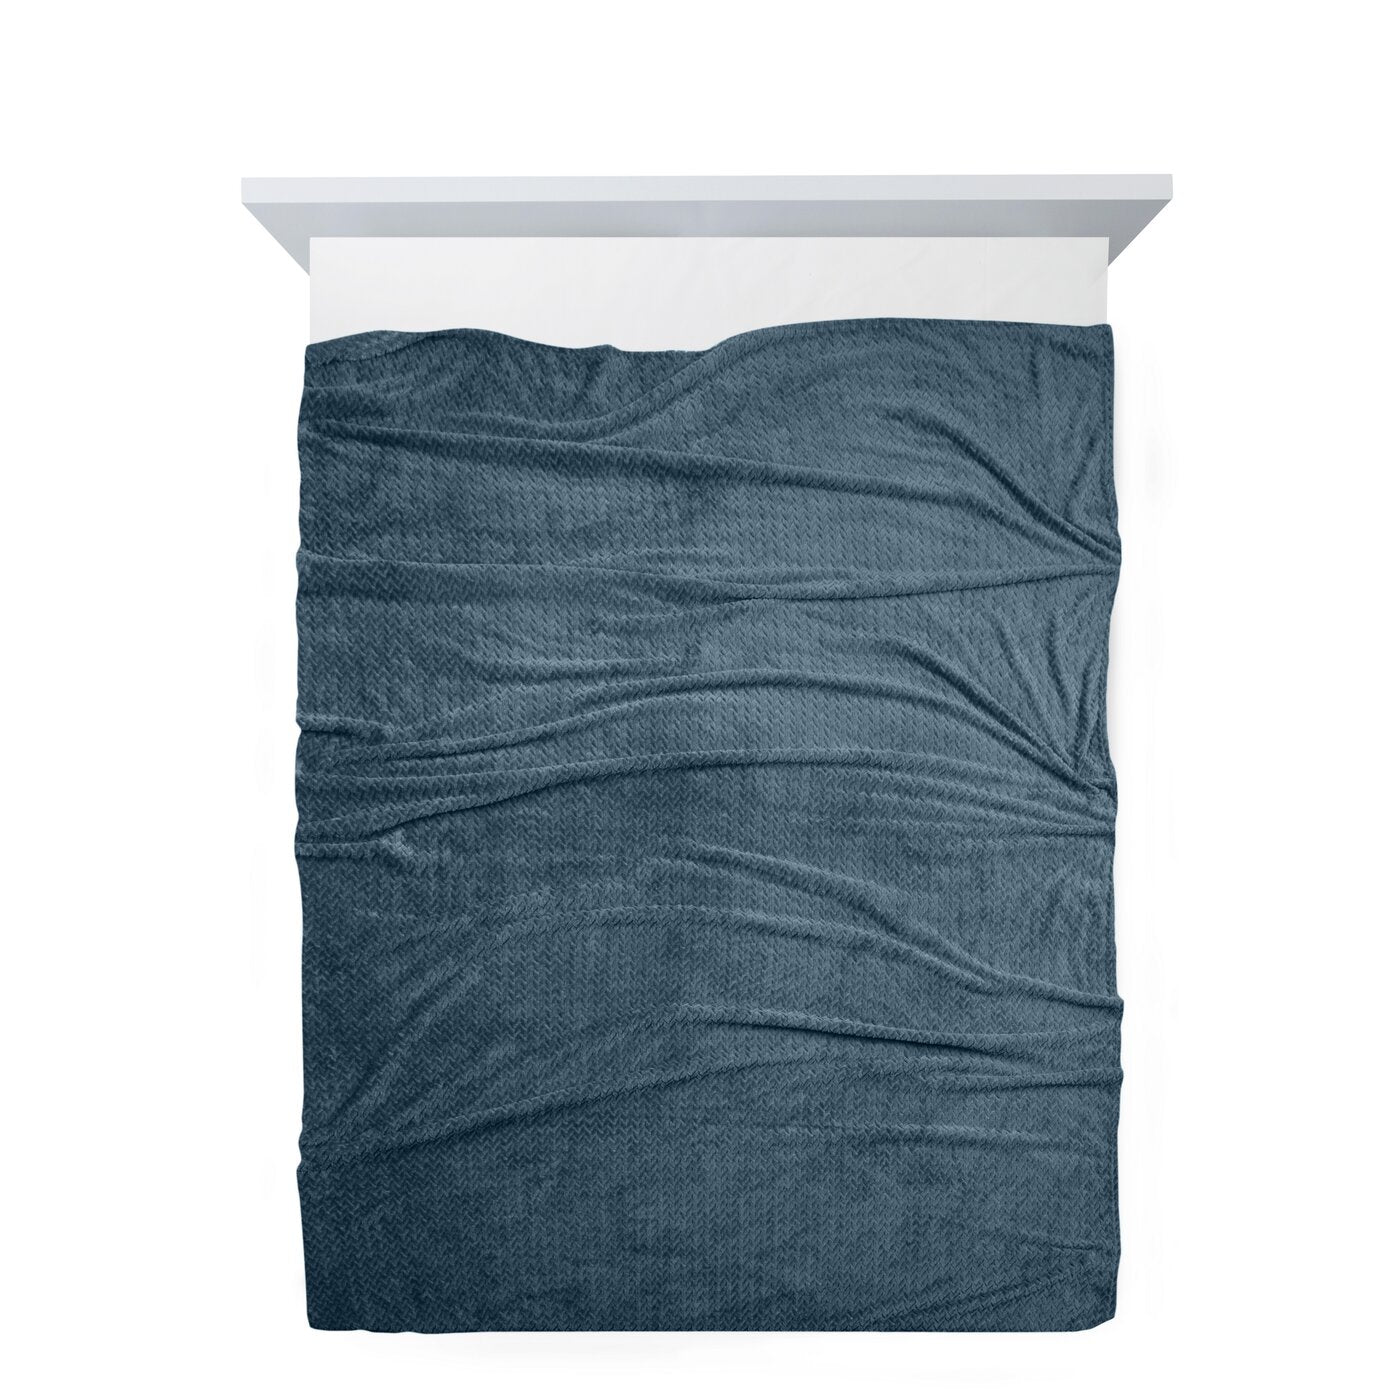 Pătură moale și plăcută la atingere, cu model în relief albastru CINDY 5 Perdele de Poveste